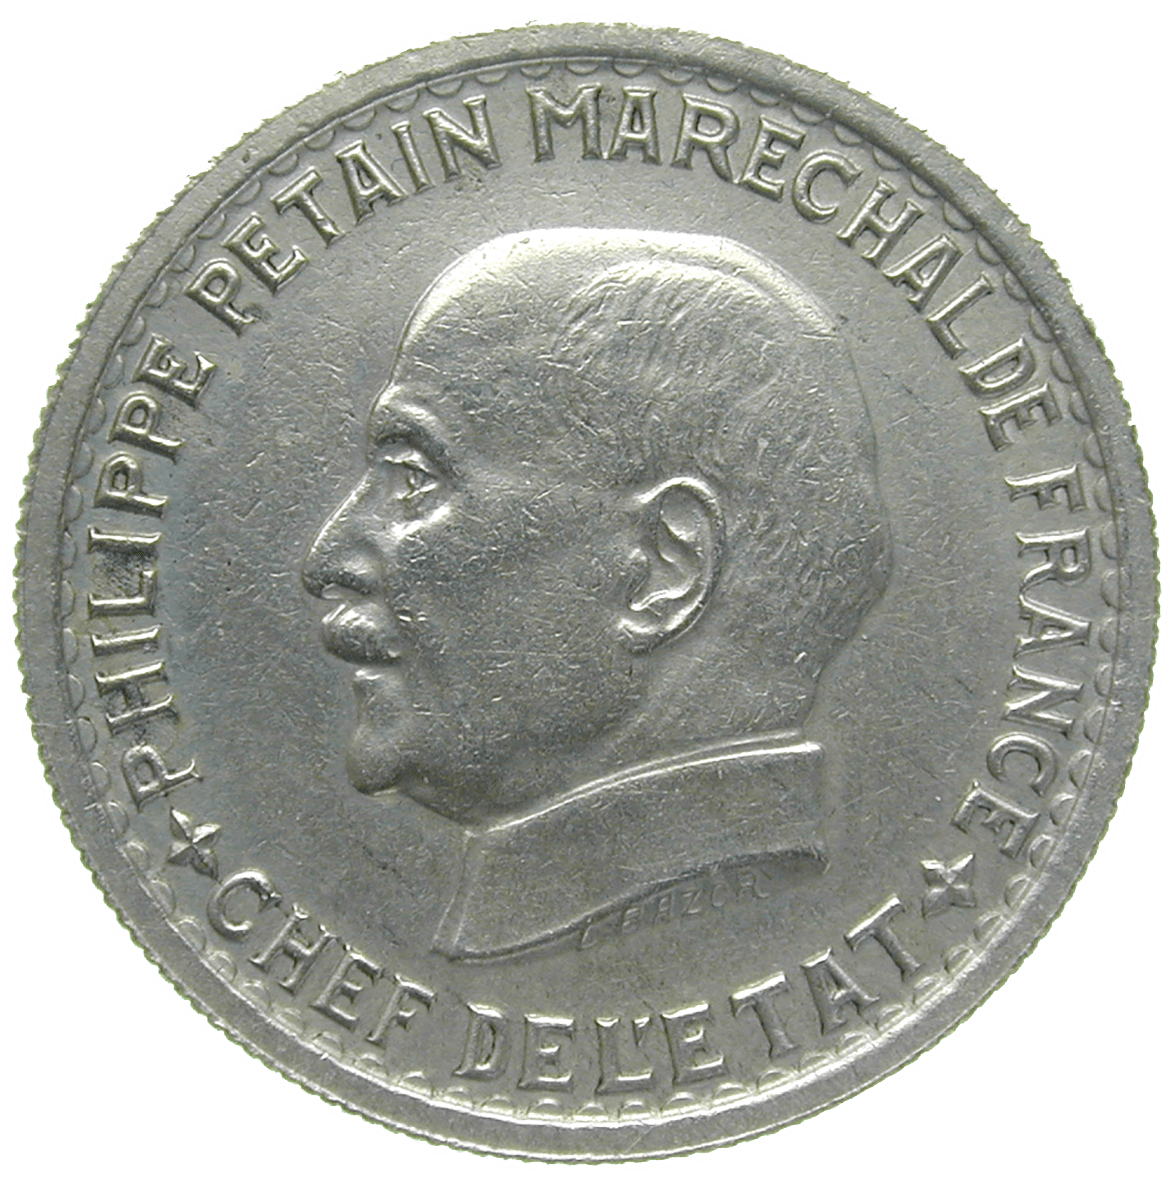 France, Etat Français, Philippe Pétain, 5 Francs 1941 (obverse)